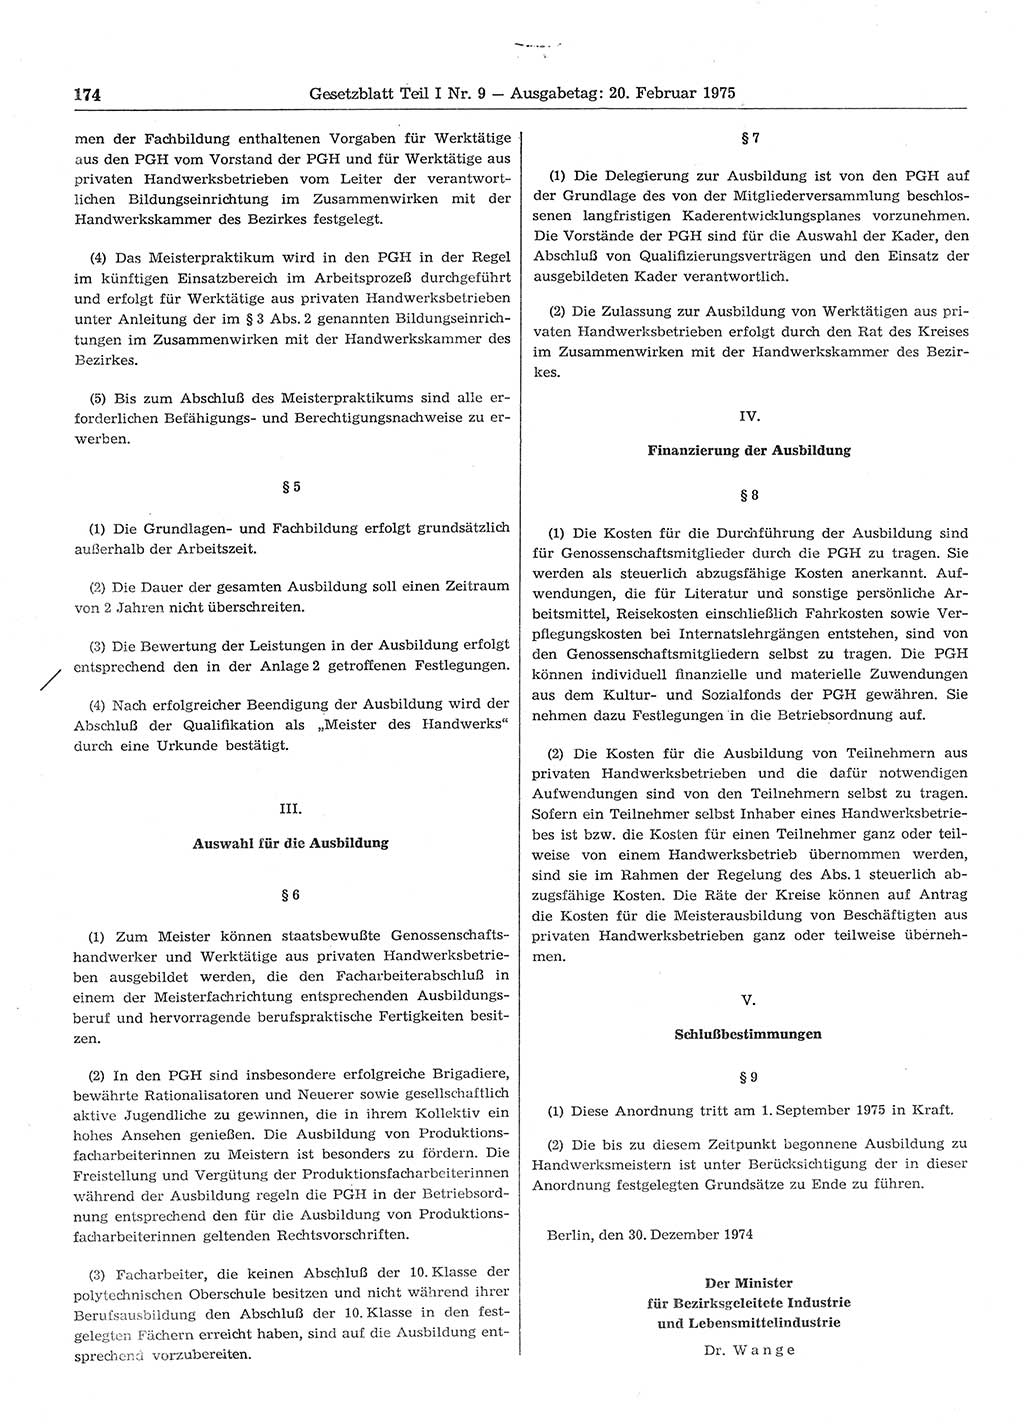 Gesetzblatt (GBl.) der Deutschen Demokratischen Republik (DDR) Teil Ⅰ 1975, Seite 174 (GBl. DDR Ⅰ 1975, S. 174)